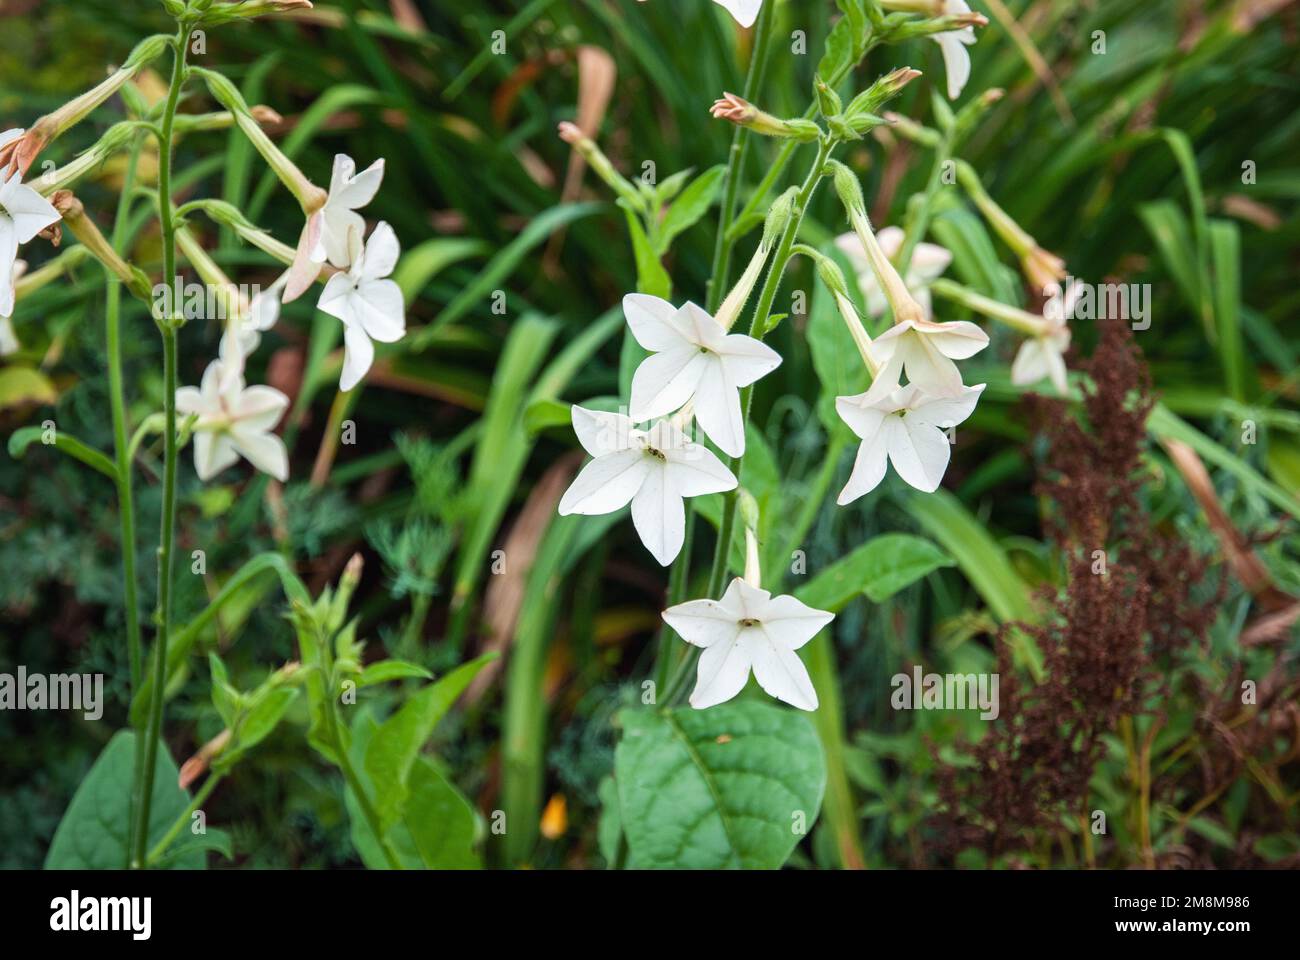 Tabac perse Nicotiana alata plante à fleurs blanches poussant dans le jardin Banque D'Images